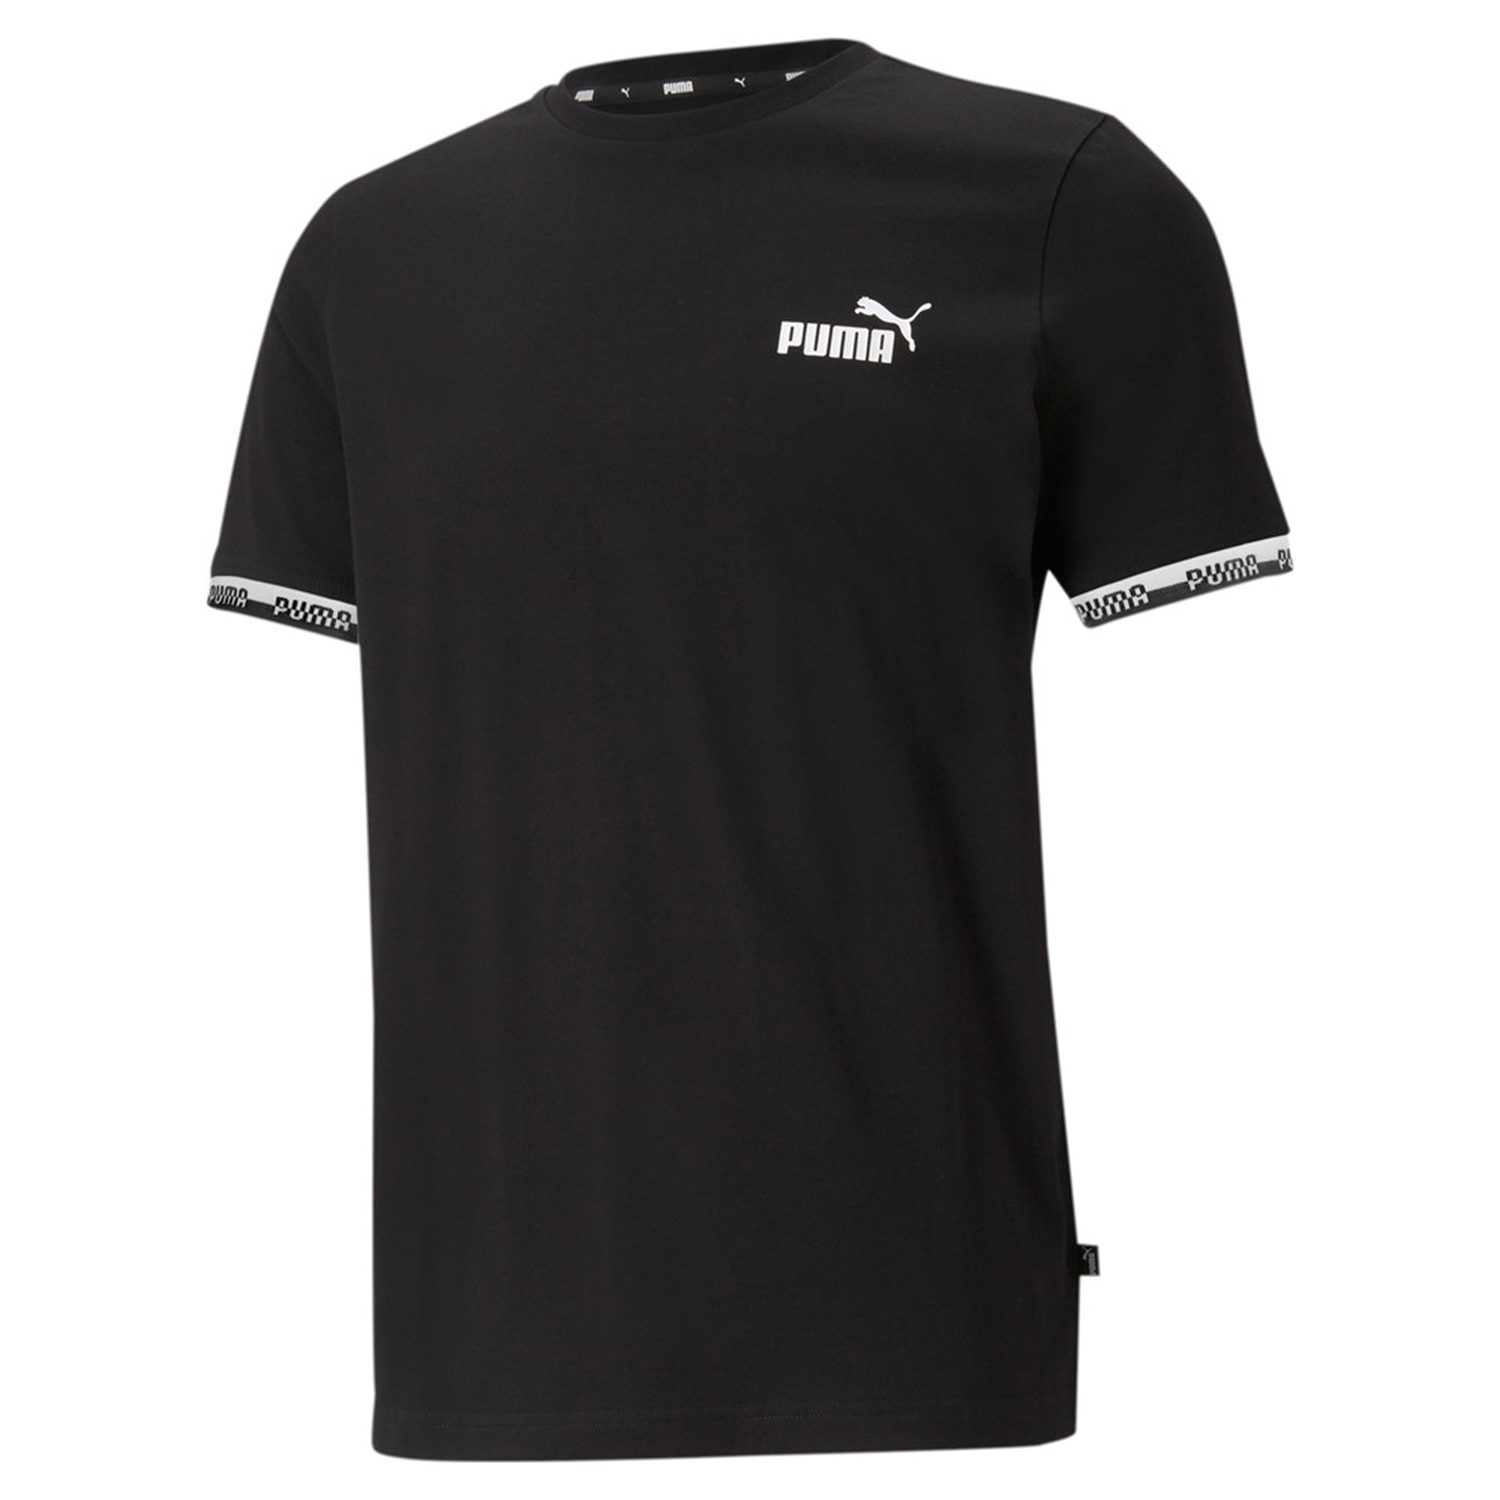 PUMA Herren Amplified Tee T-Shirt schwarz 580426 01 Übergrößen - 4XL